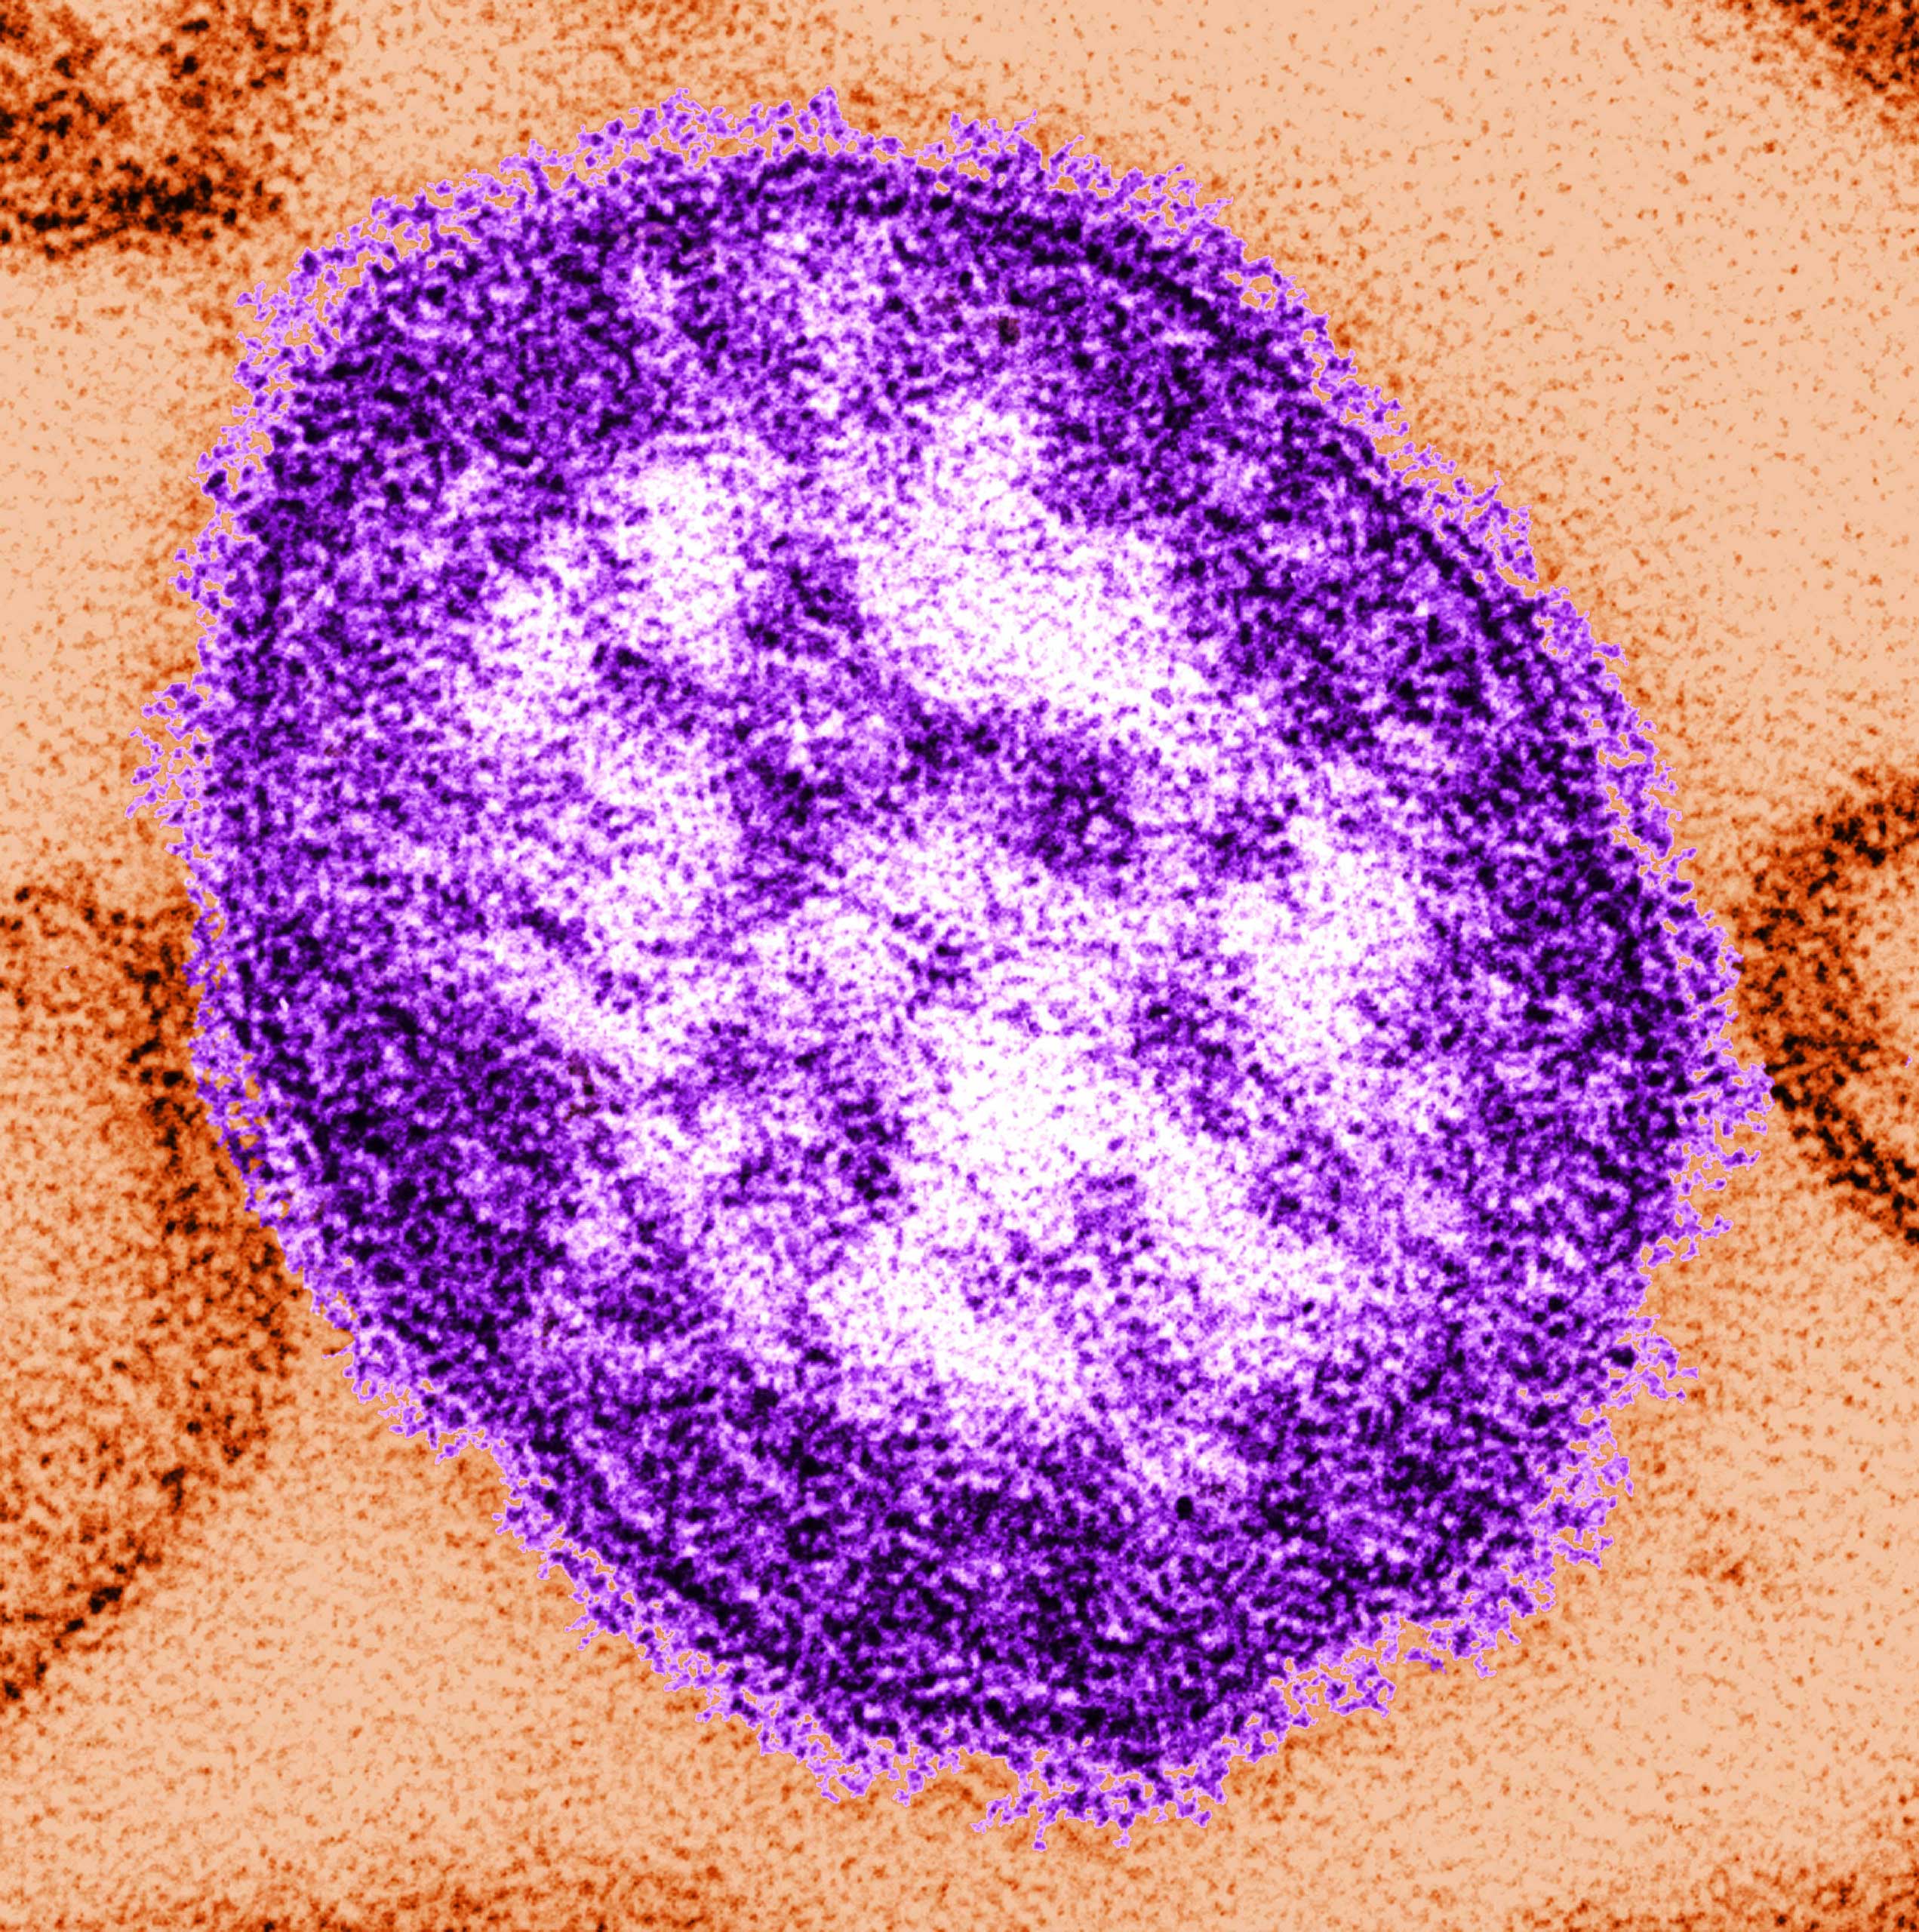 Measles Outbreaks Spread In U.S.